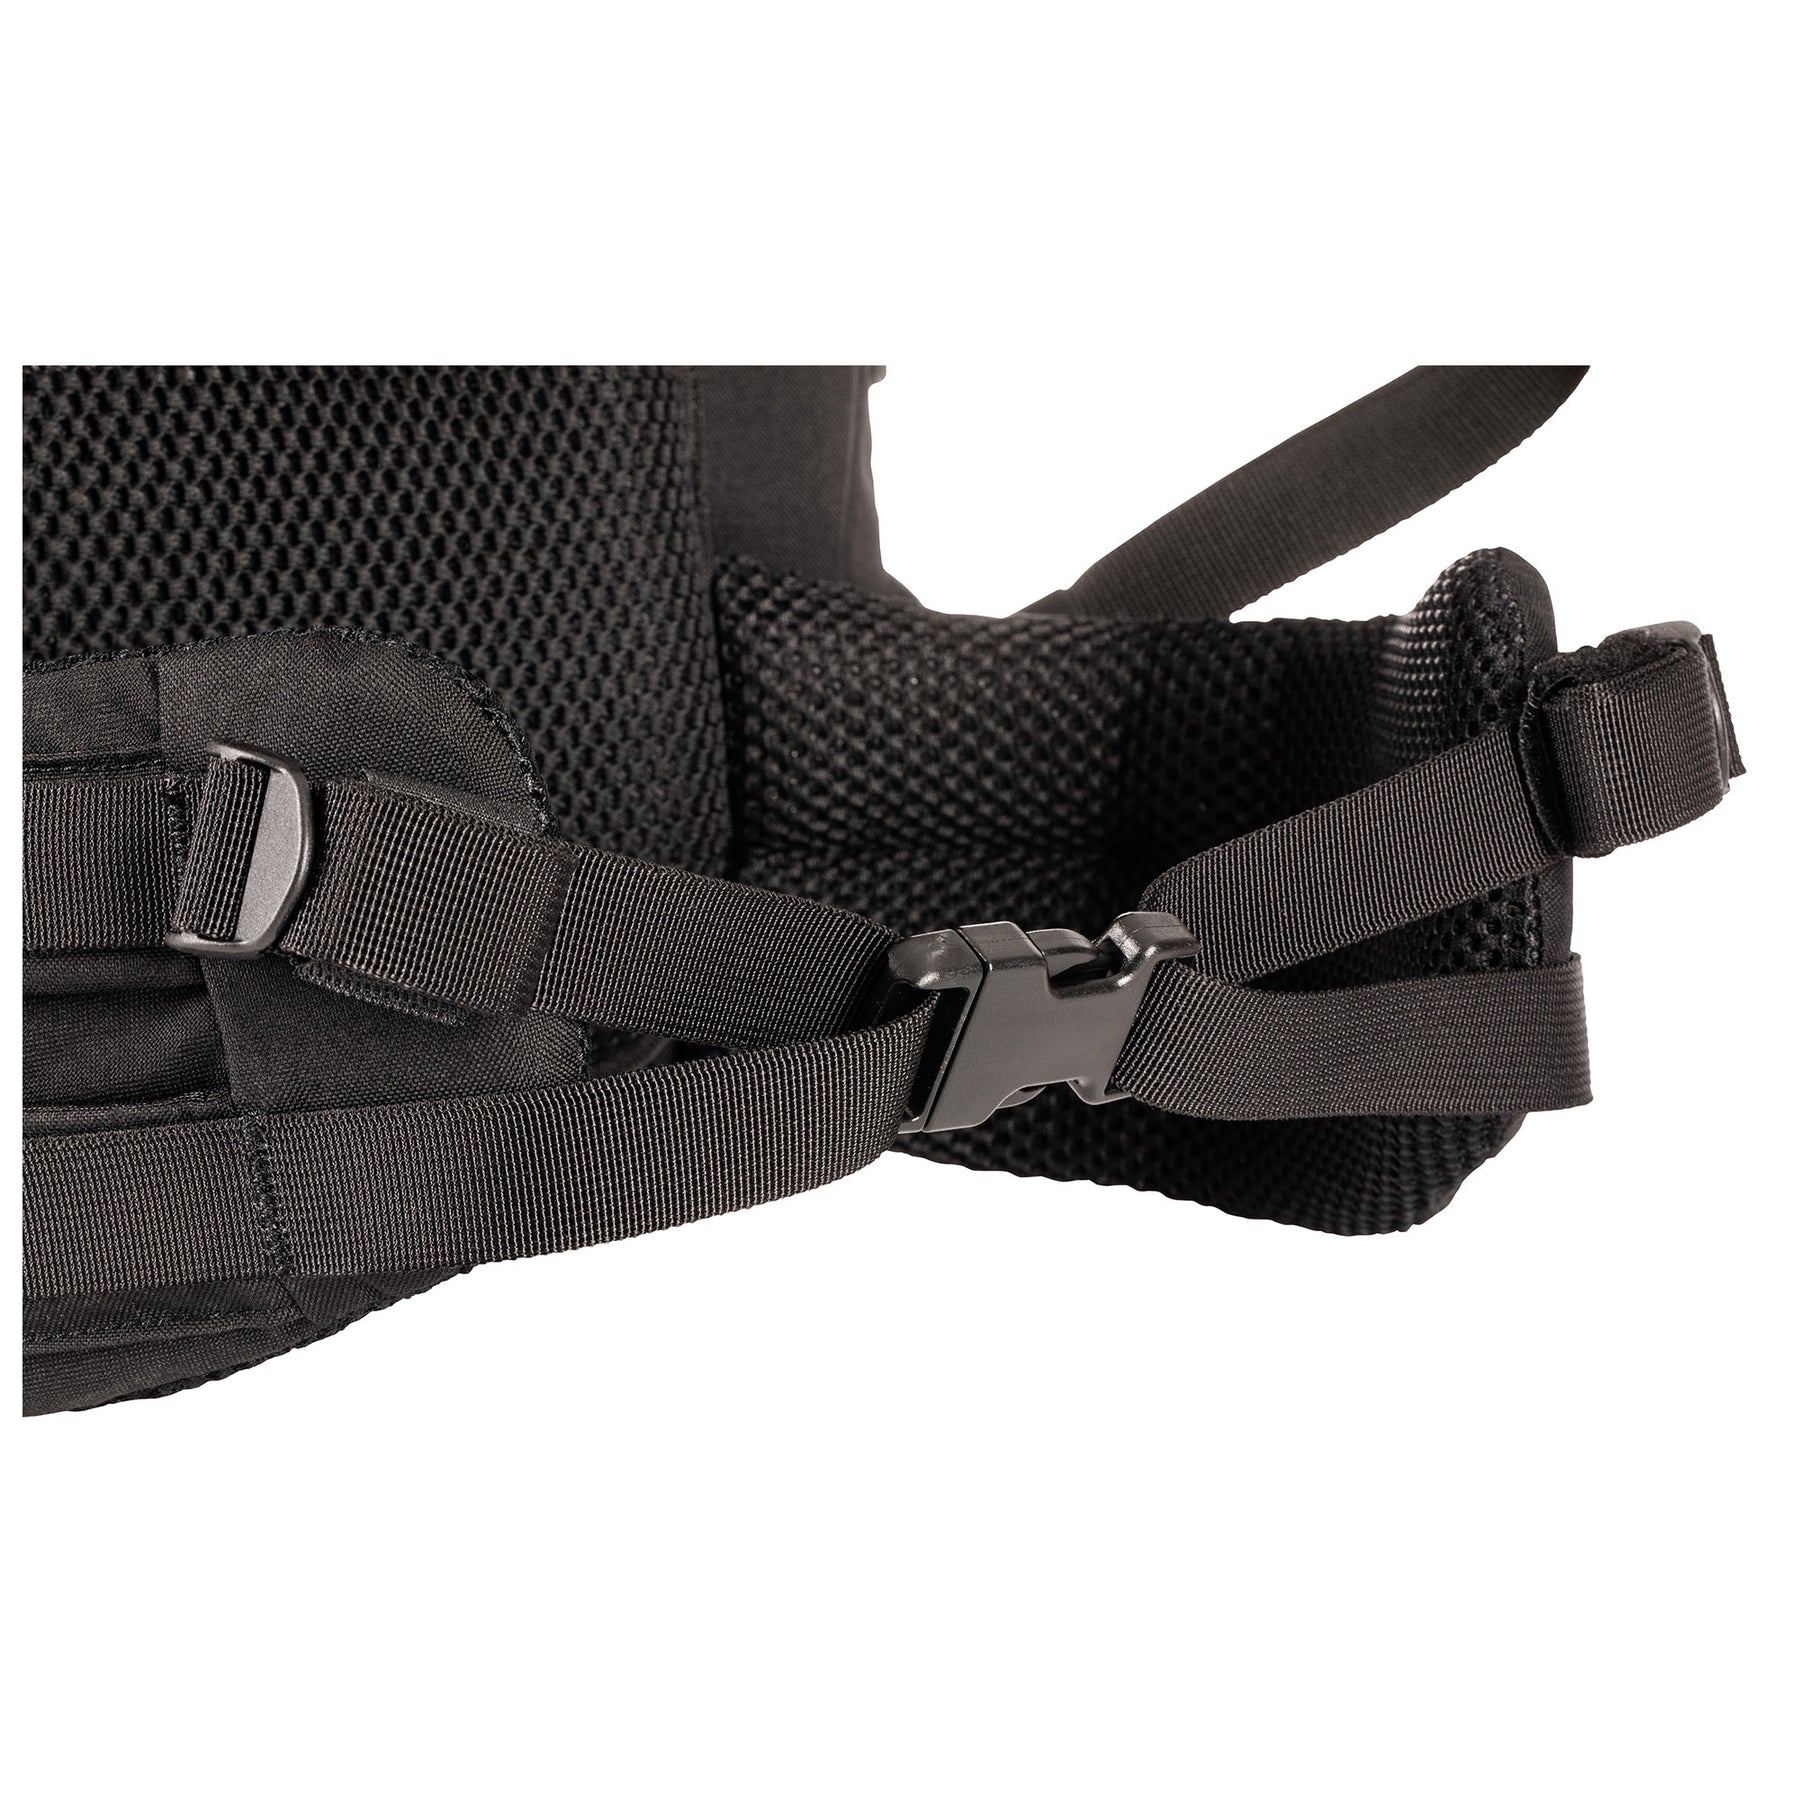 ZAINO RUSH100 60 litri di 5.11 Tactical Black (nero) - vista dettaglio cinghie cintura lombare